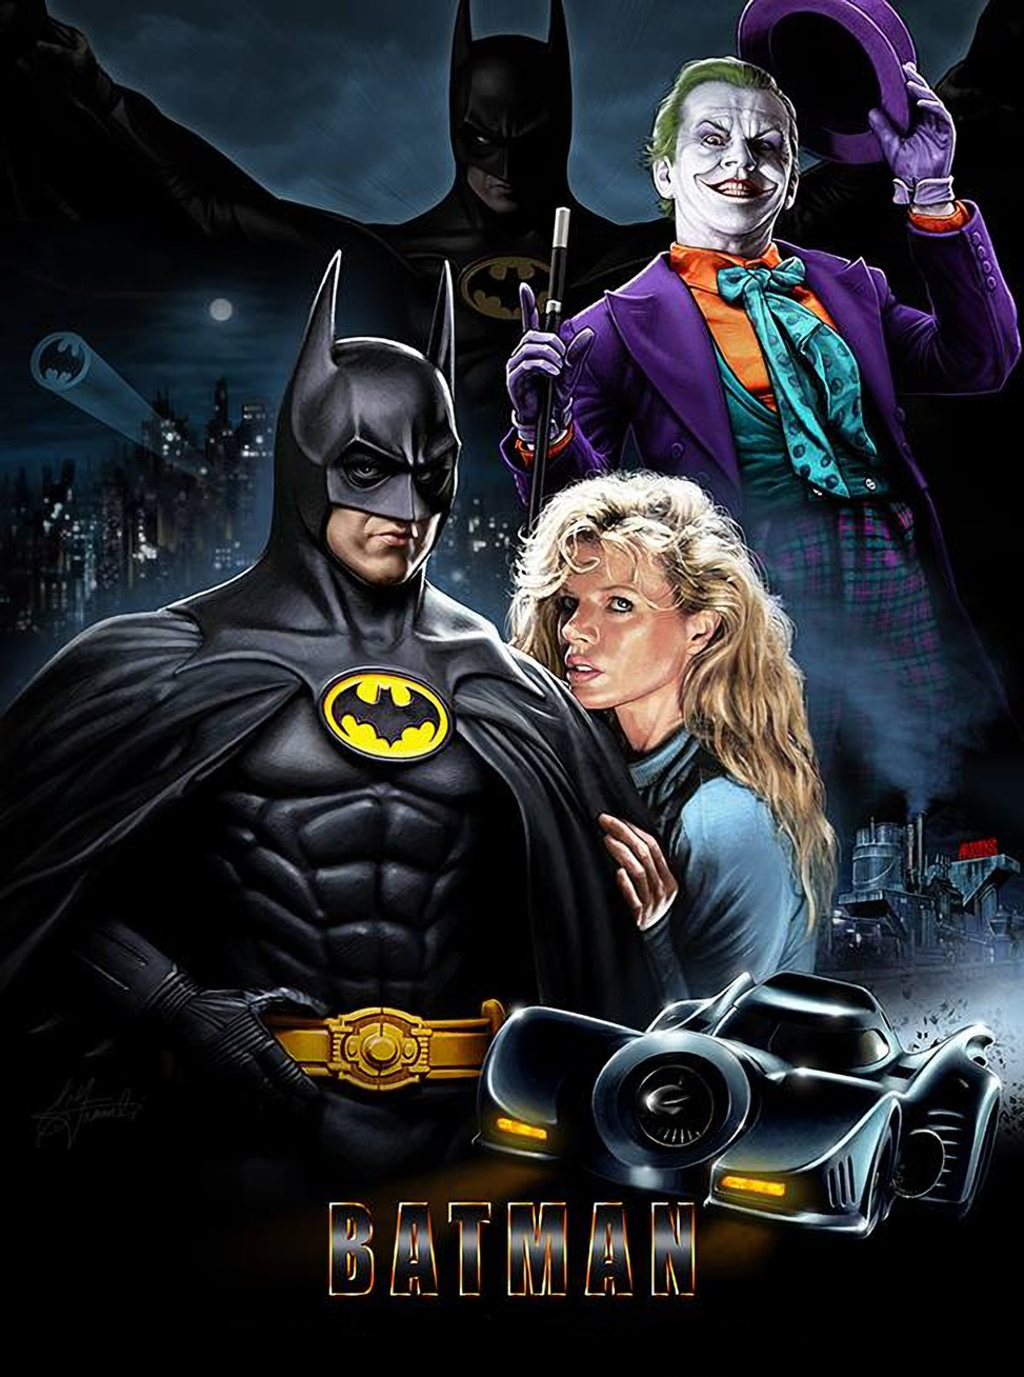 En pantalla. Batman, dirigida por Tim Burton, fue protagonizada por Michael Keaton (Batman), Jack Nicholson (The Joker) y Kim Basinger 'Vicki Vale'.